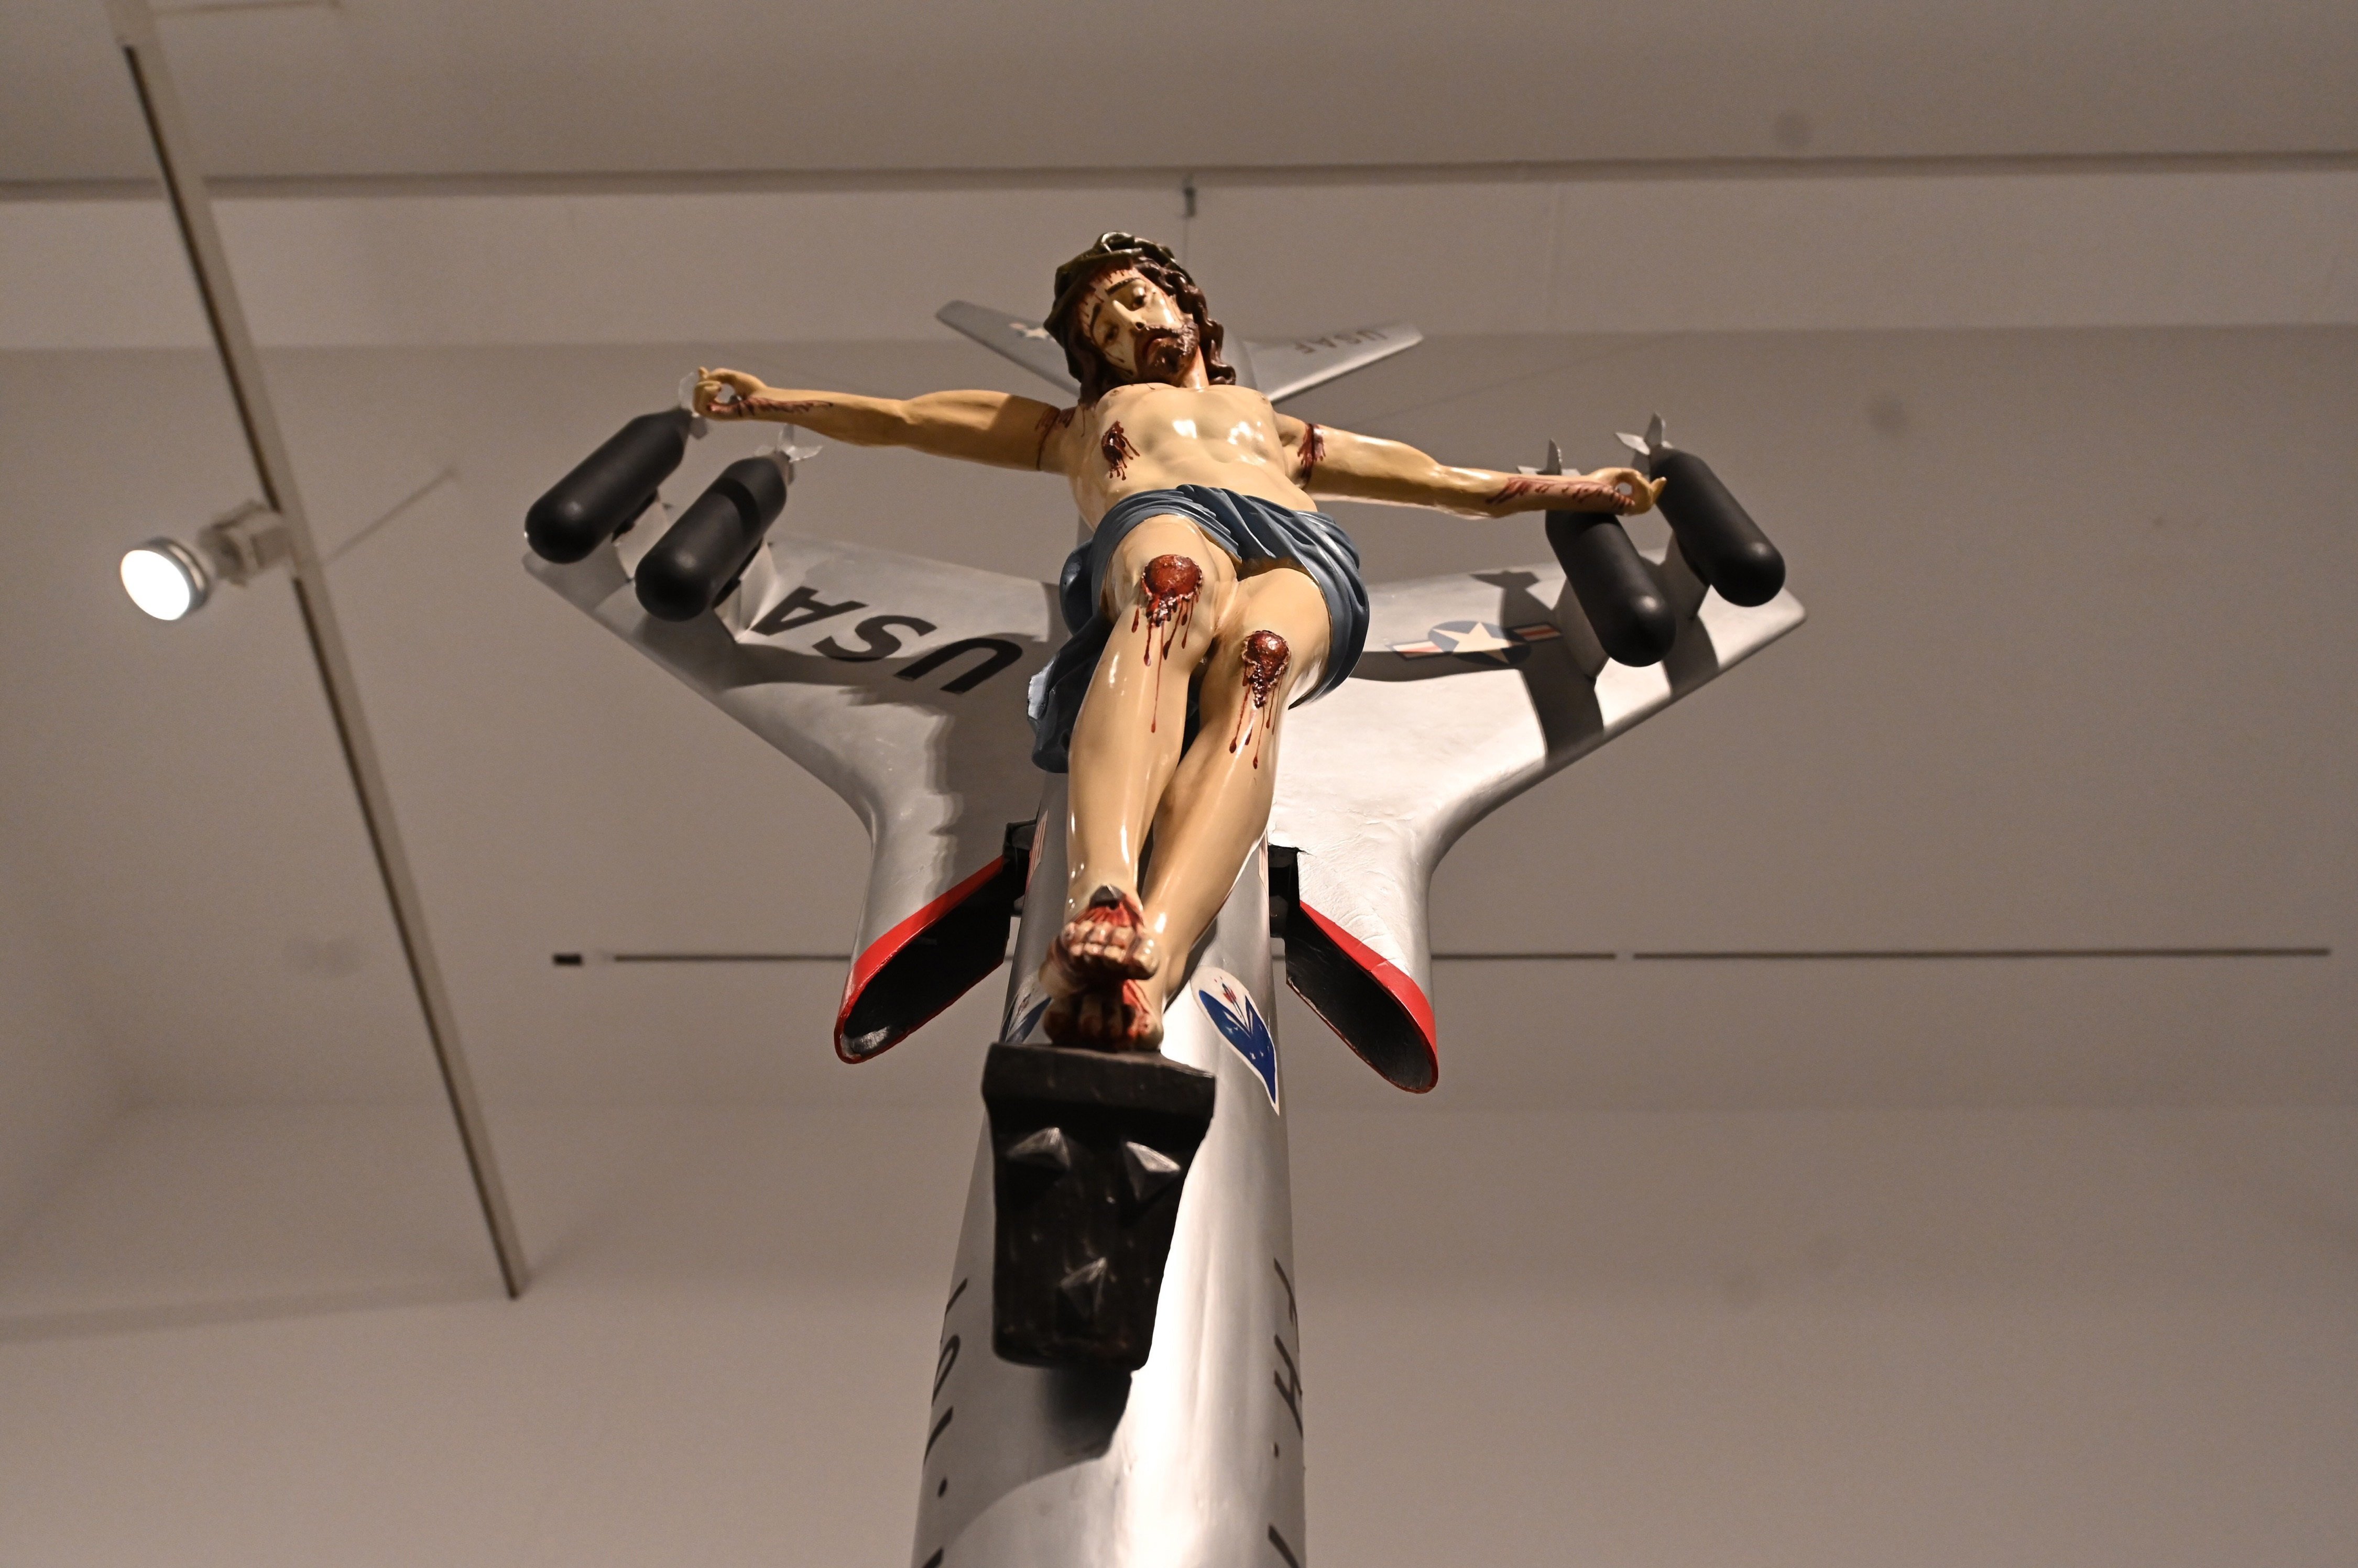 Crist en un avió i caca d'ocell: l'exposició del Reina Sofía que portarà cua